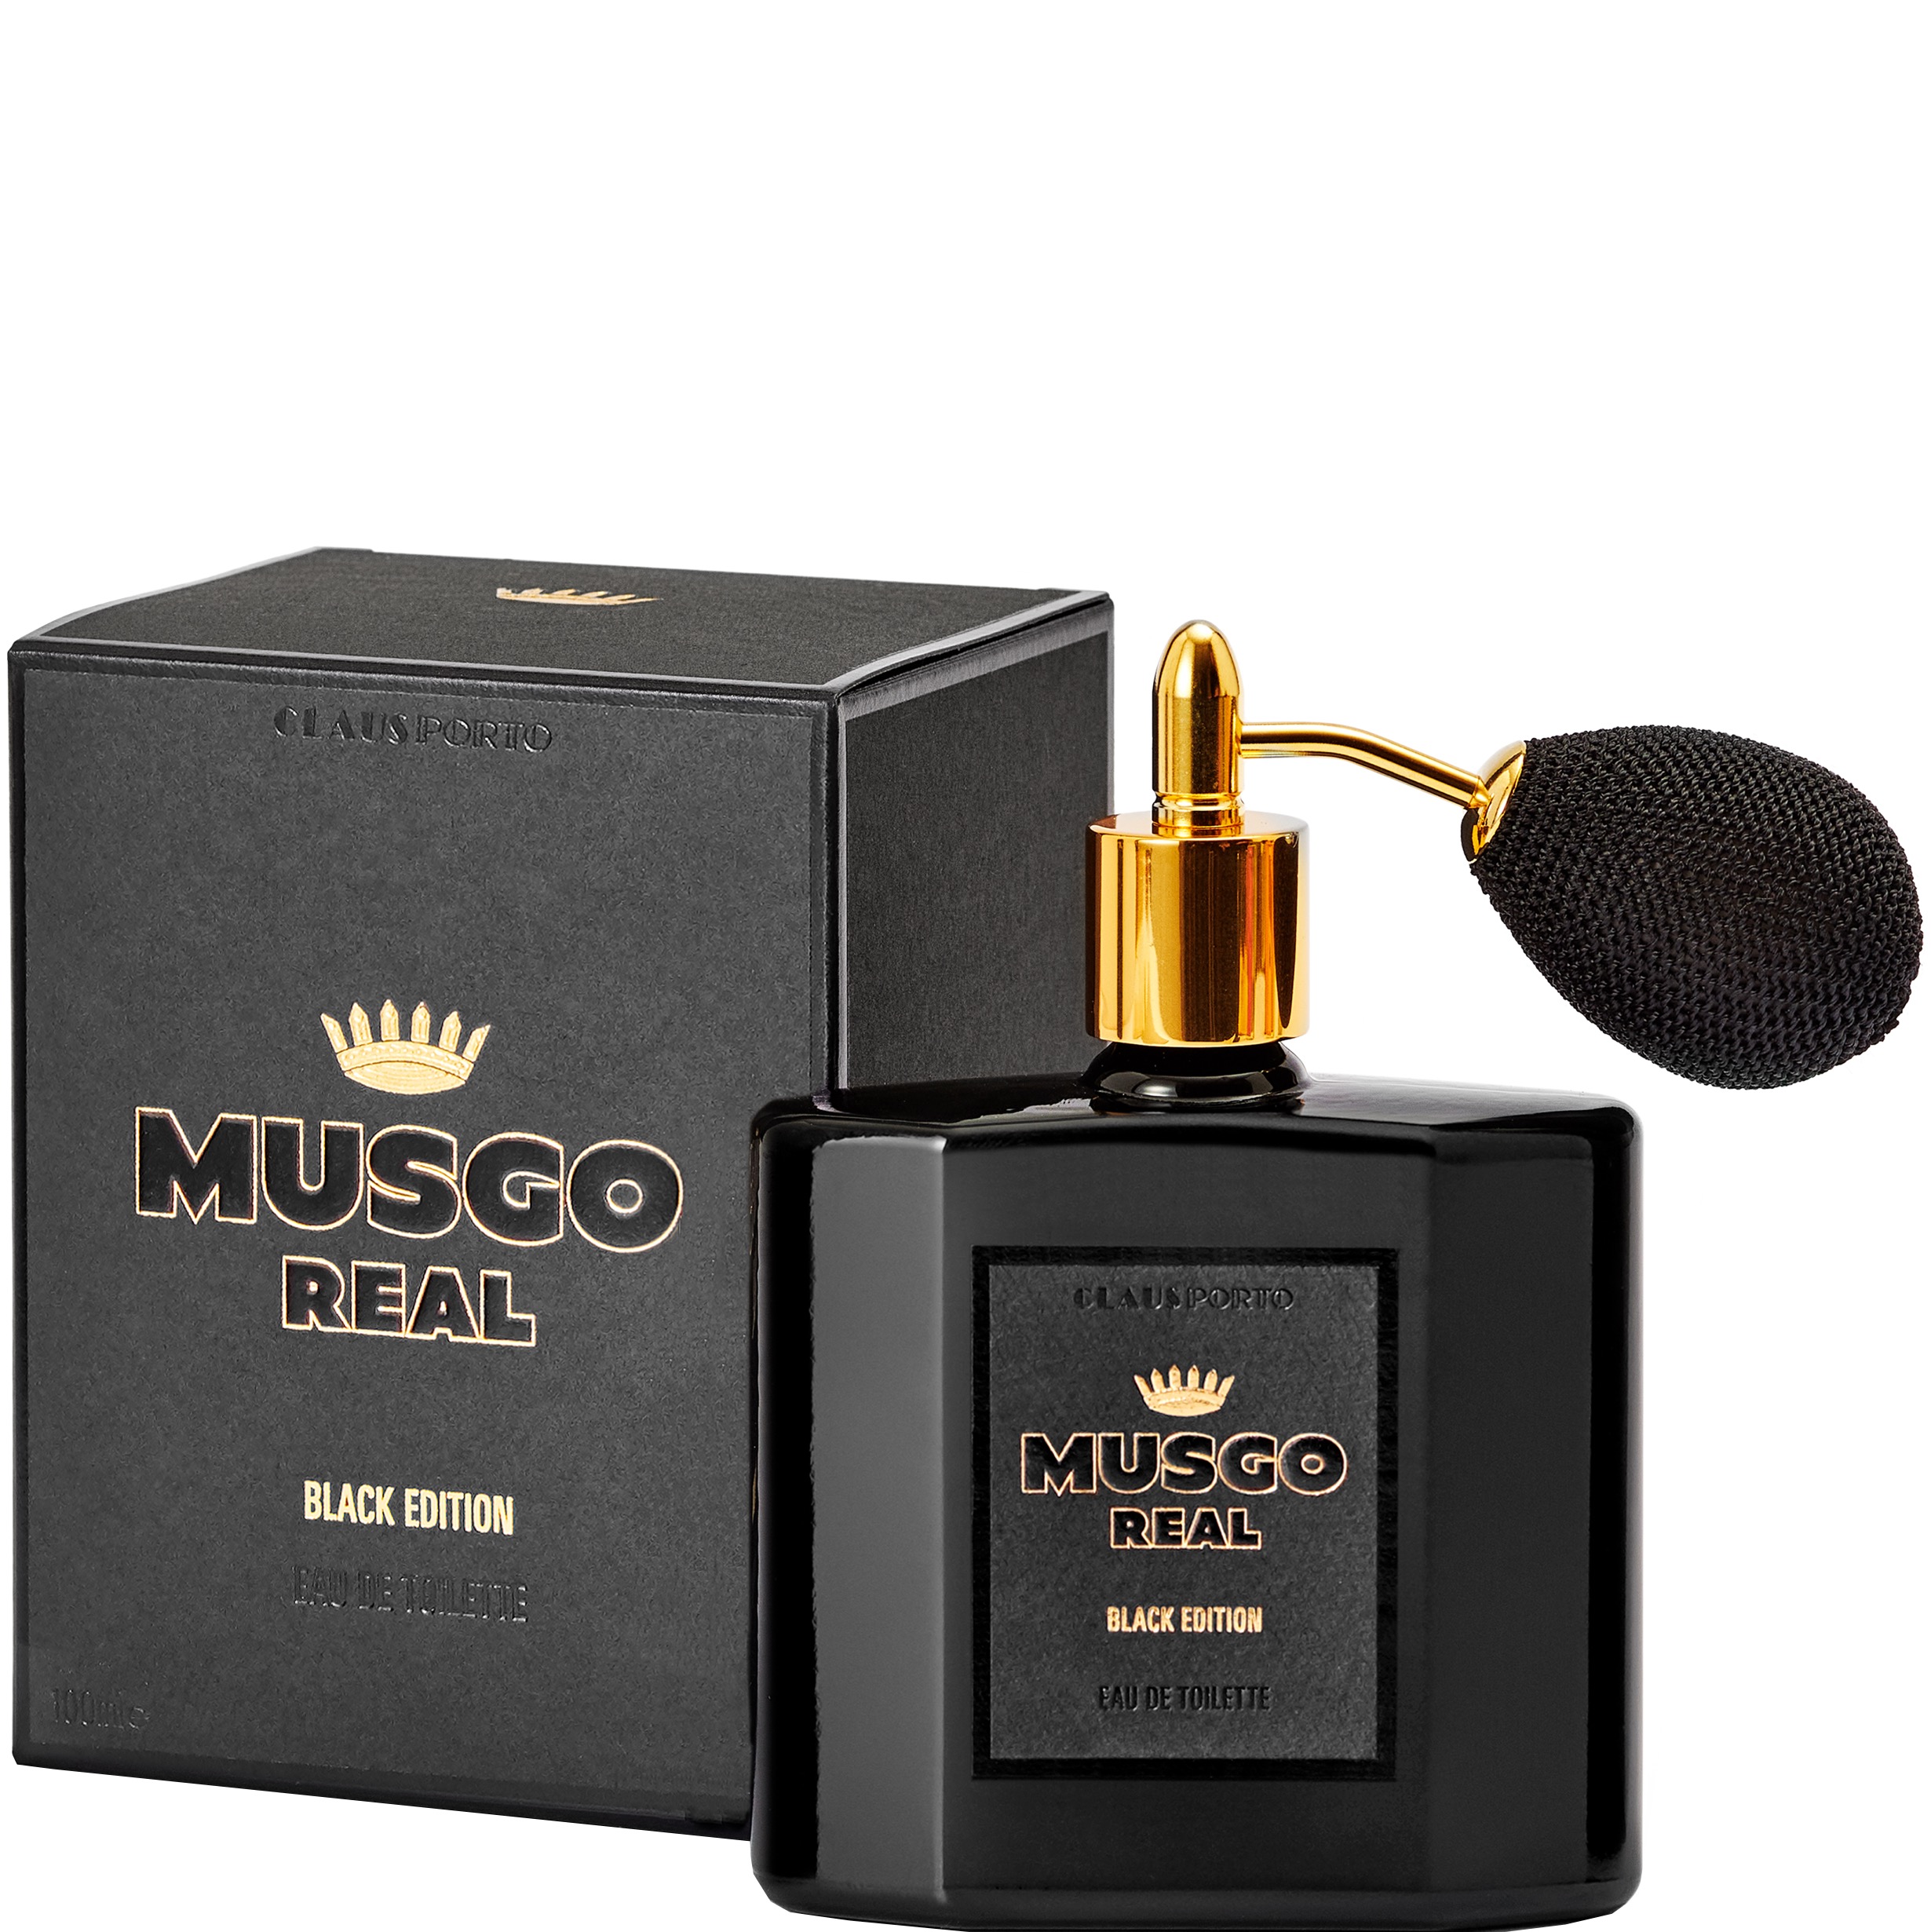 Musgo Real Eau de Toilette Black Edition 100ml - 1.1 - MR-C009